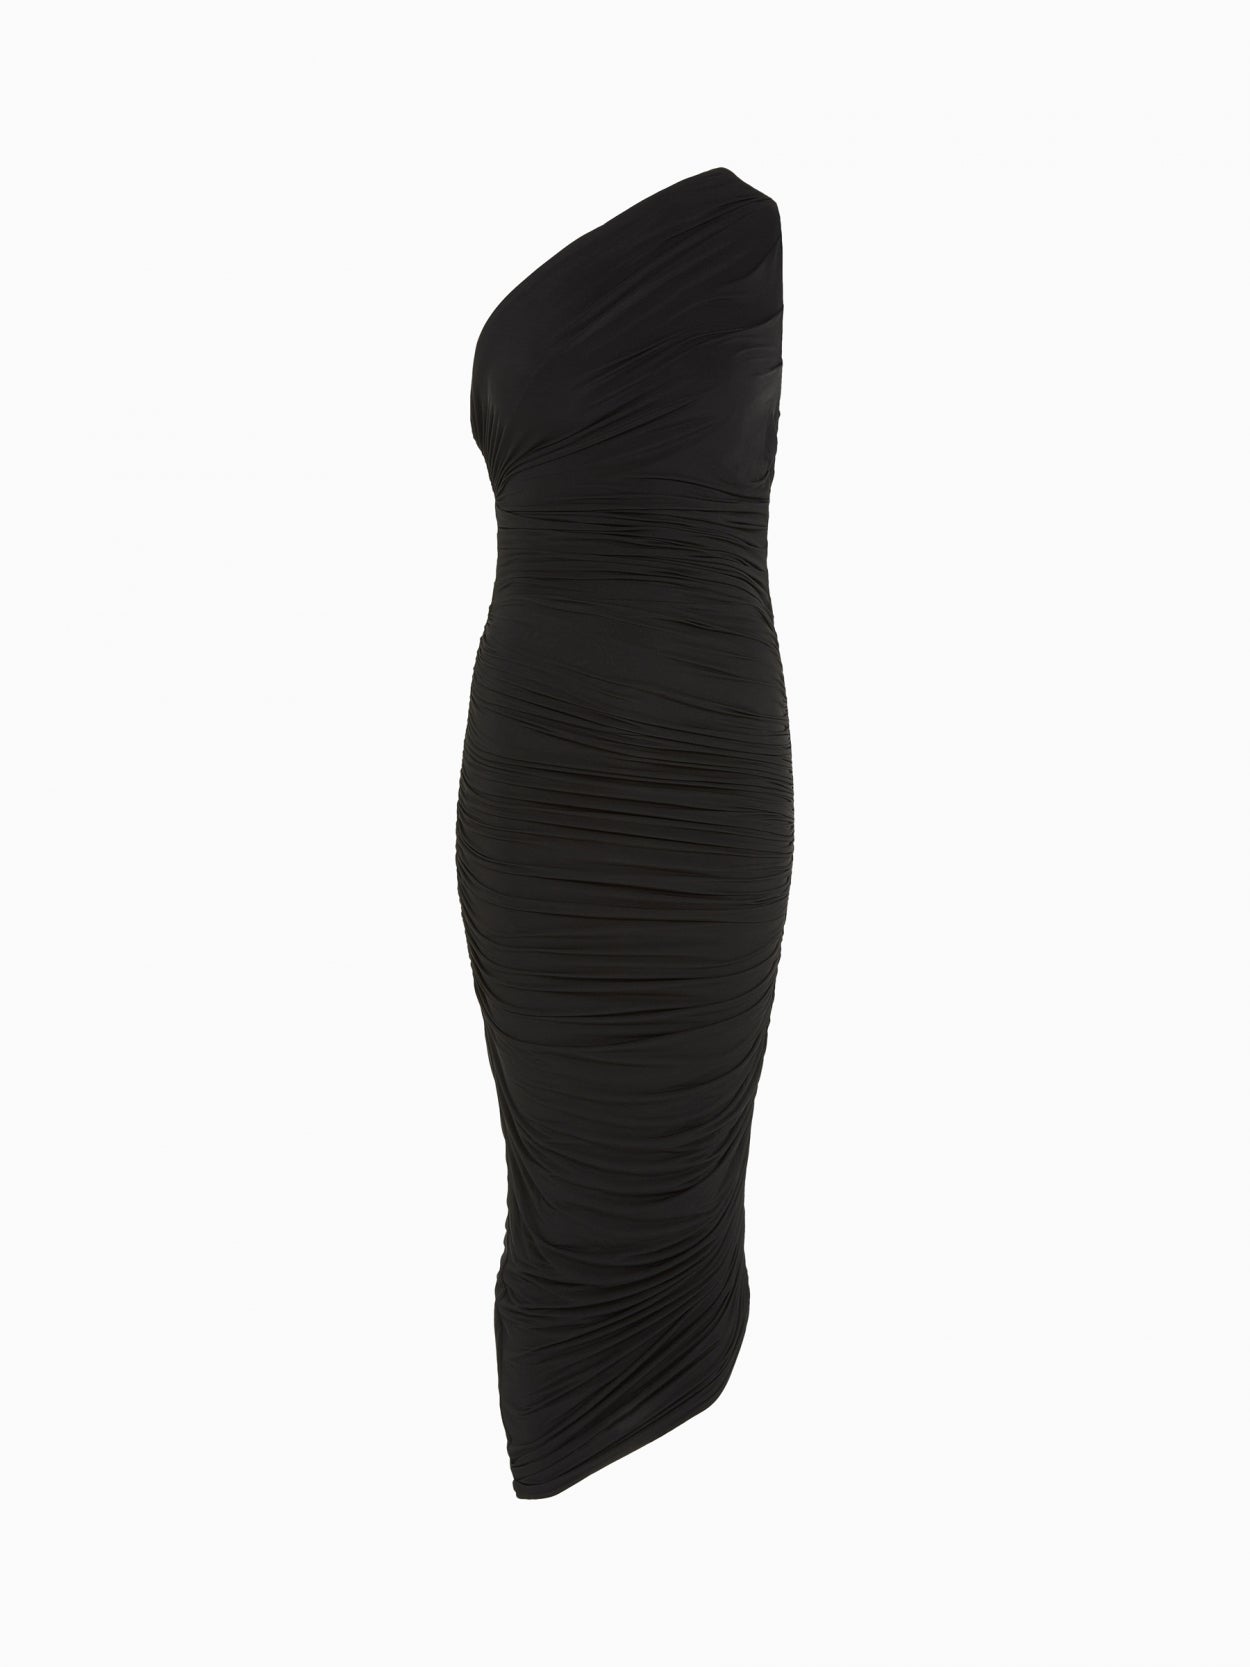 front packshot of a one shoulder black draped dress